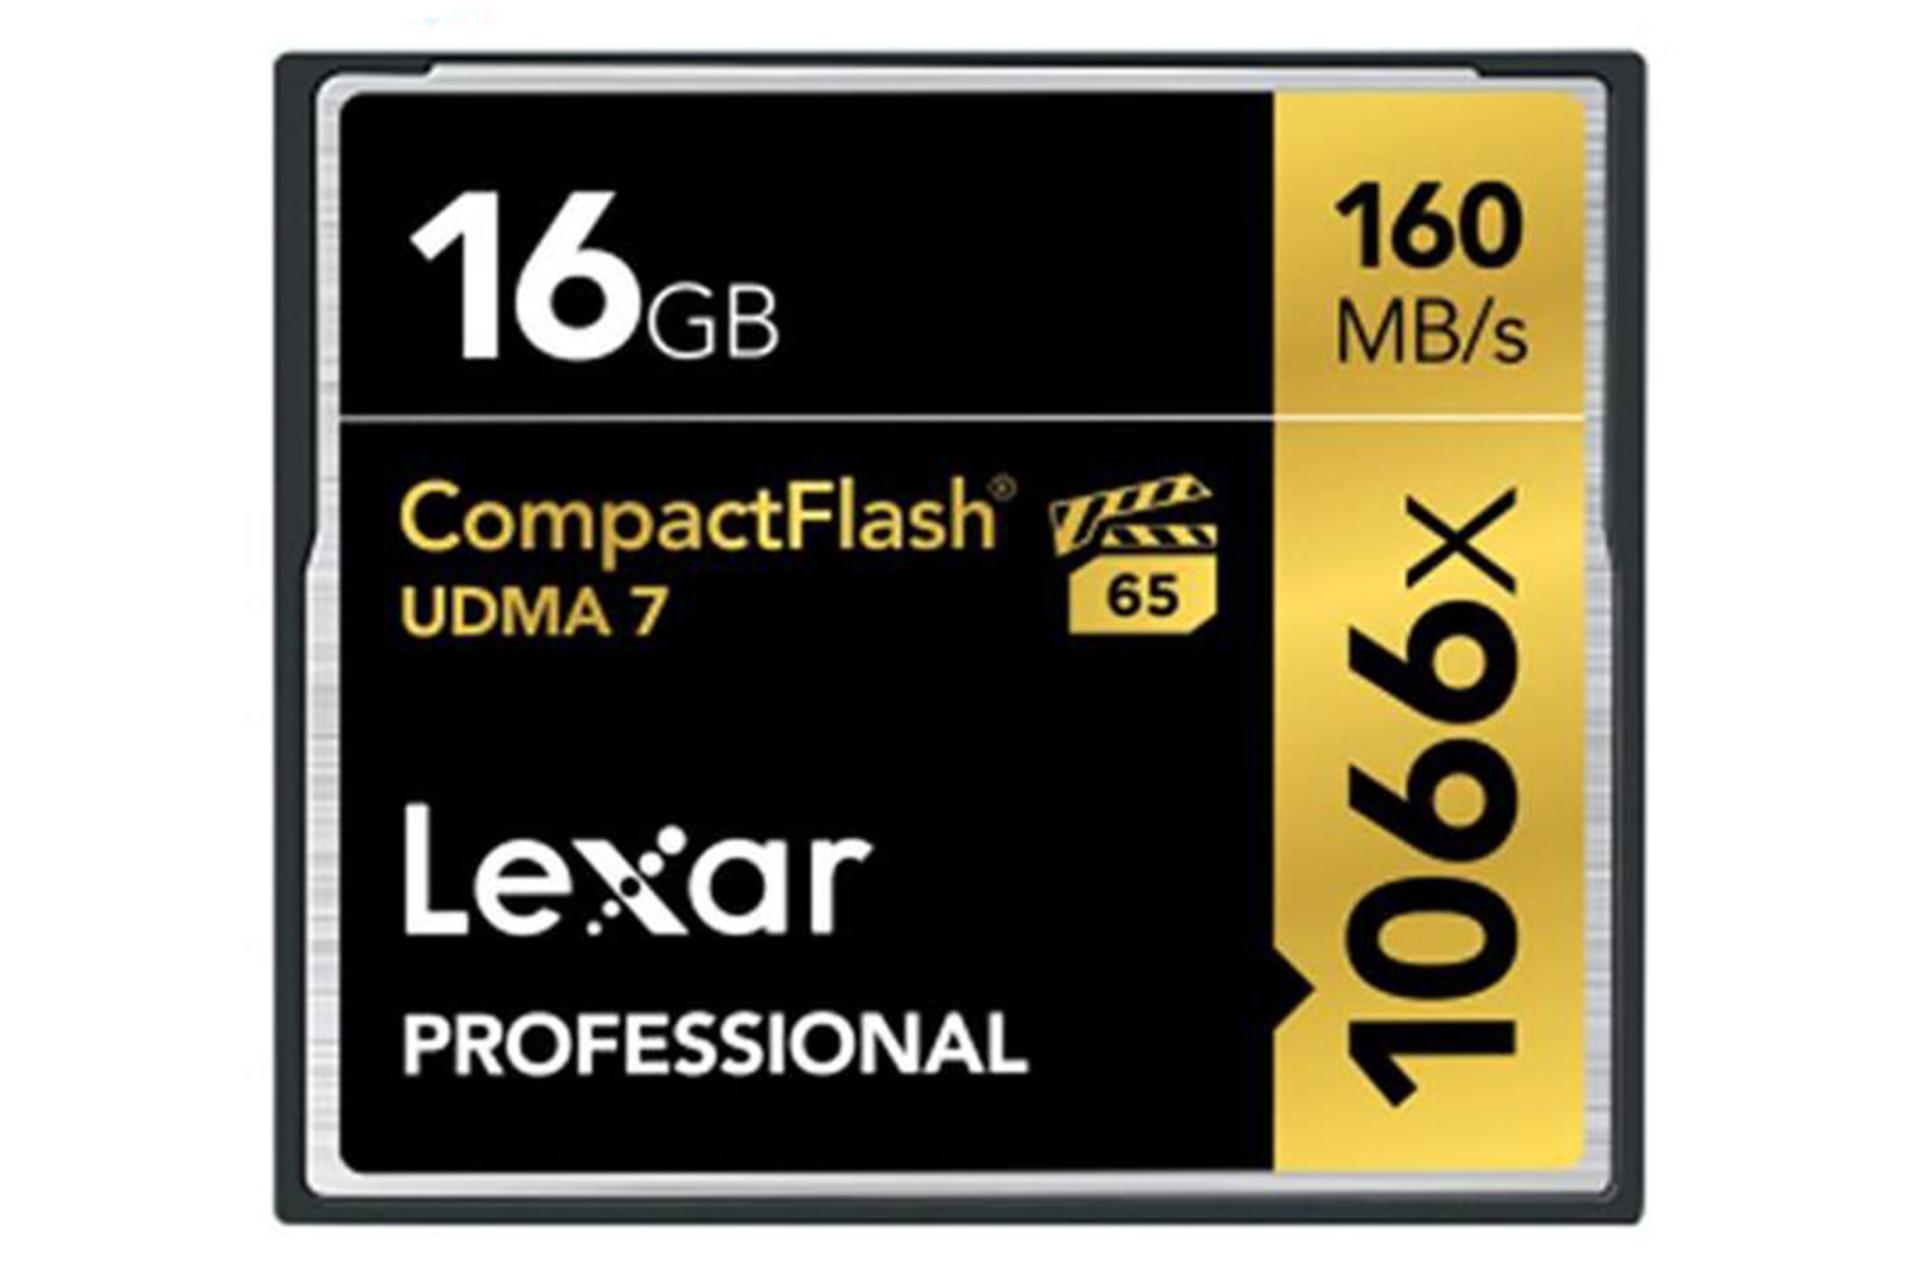 Lexar Professional CFast 2.0 16GB